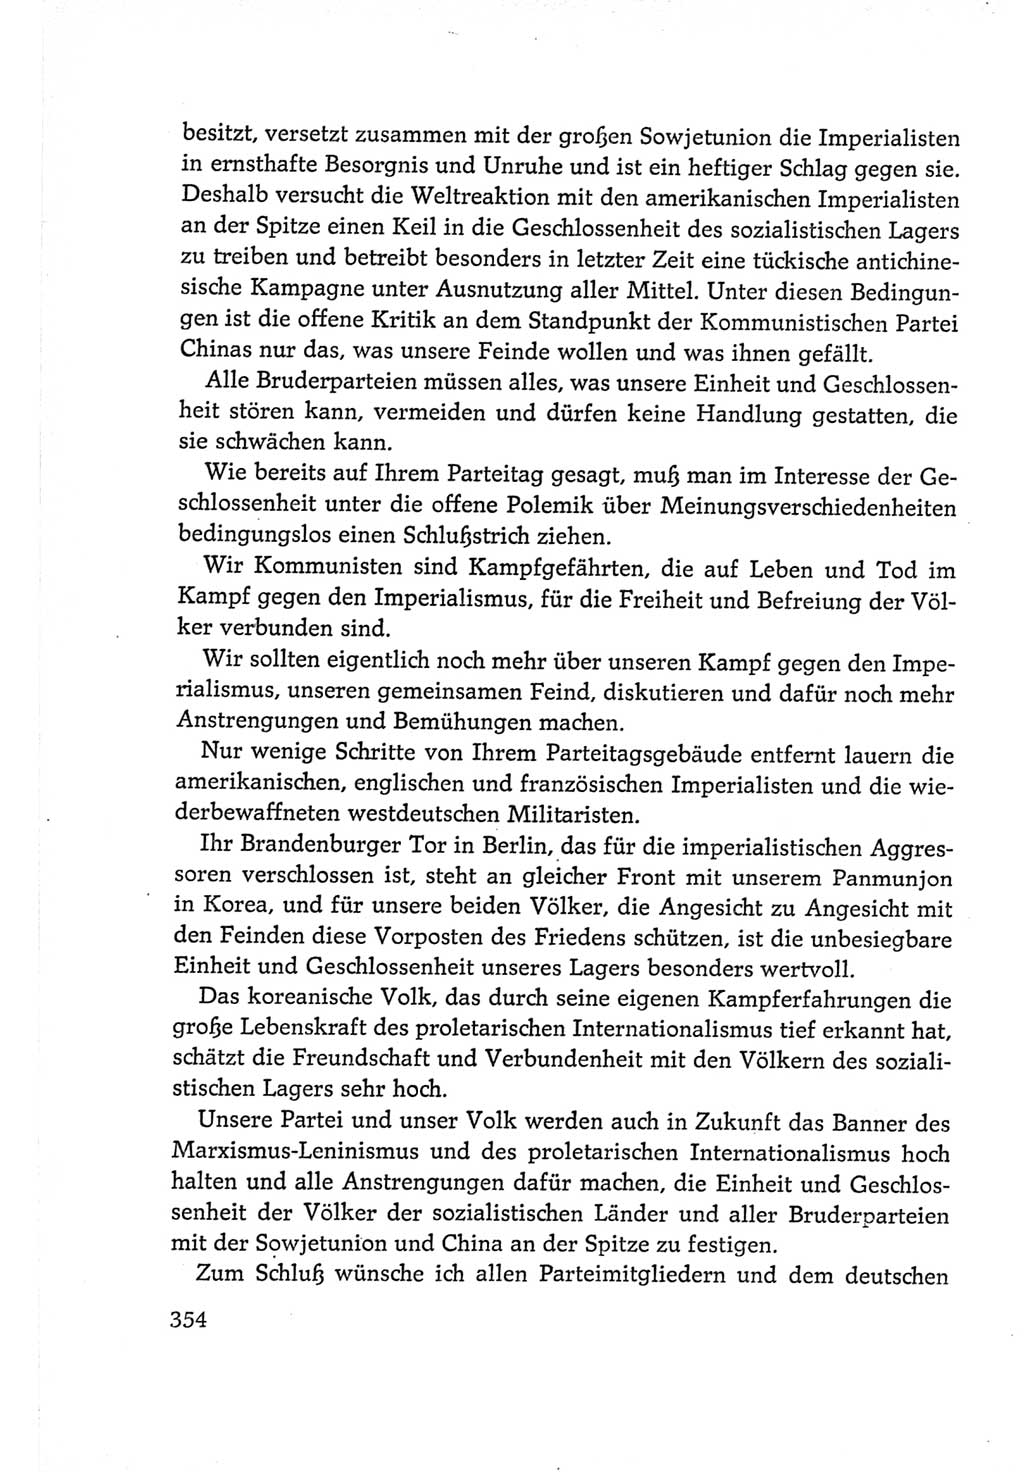 Protokoll der Verhandlungen des Ⅵ. Parteitages der Sozialistischen Einheitspartei Deutschlands (SED) [Deutsche Demokratische Republik (DDR)] 1963, Band Ⅱ, Seite 354 (Prot. Verh. Ⅵ. PT SED DDR 1963, Bd. Ⅱ, S. 354)